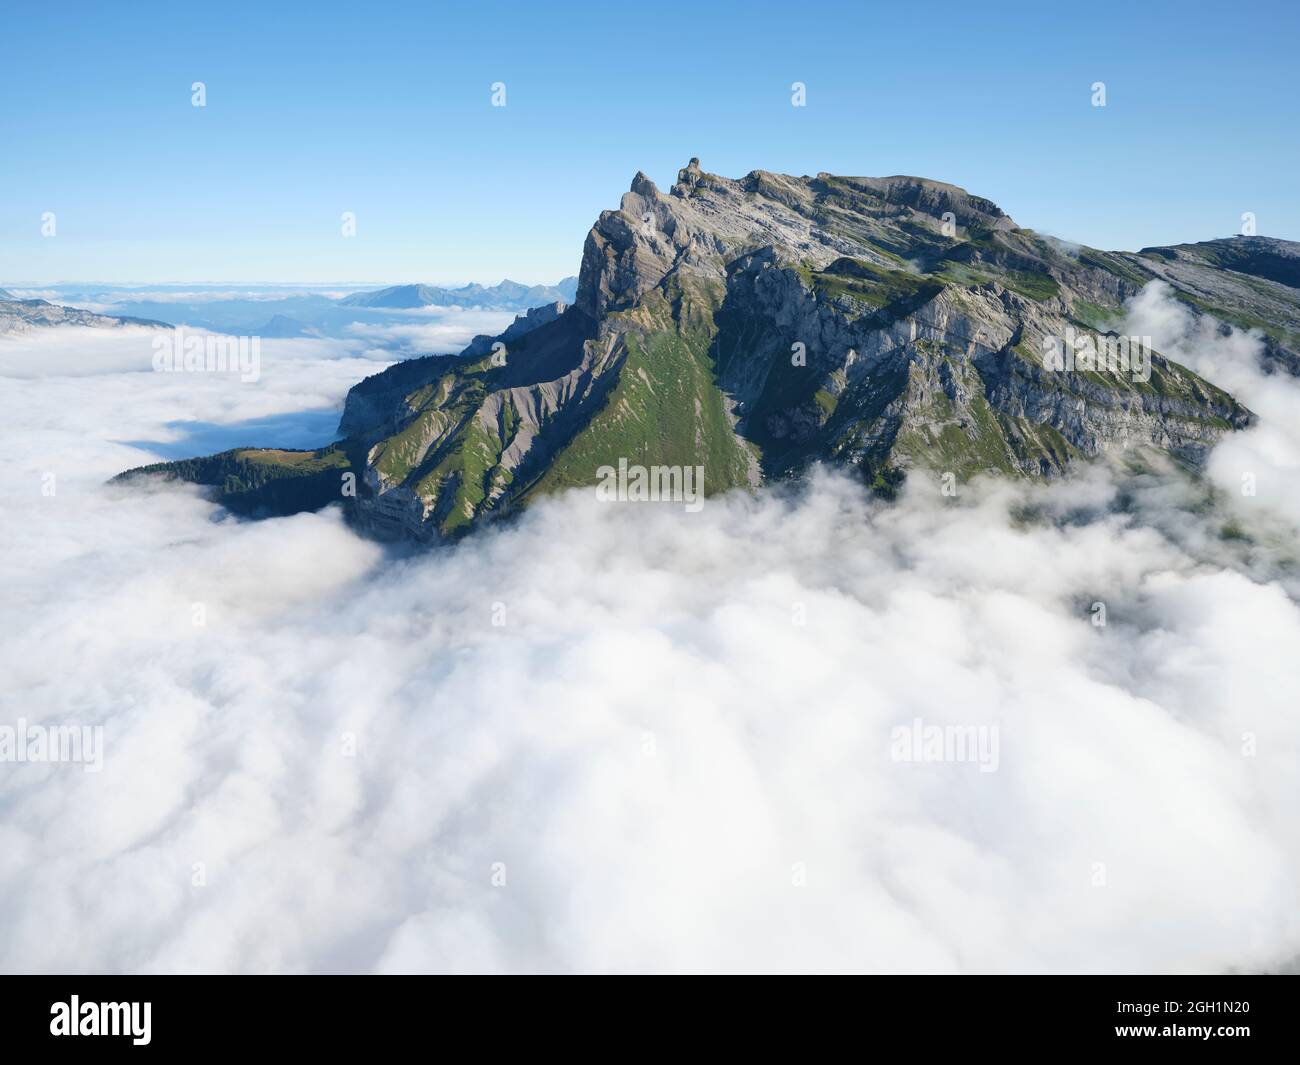 VUE AÉRIENNE. Aiguille de Varan (altitude : 2544m) entourée de nuages de basse altitude le matin. Passy, haute-Savoie, France. Banque D'Images